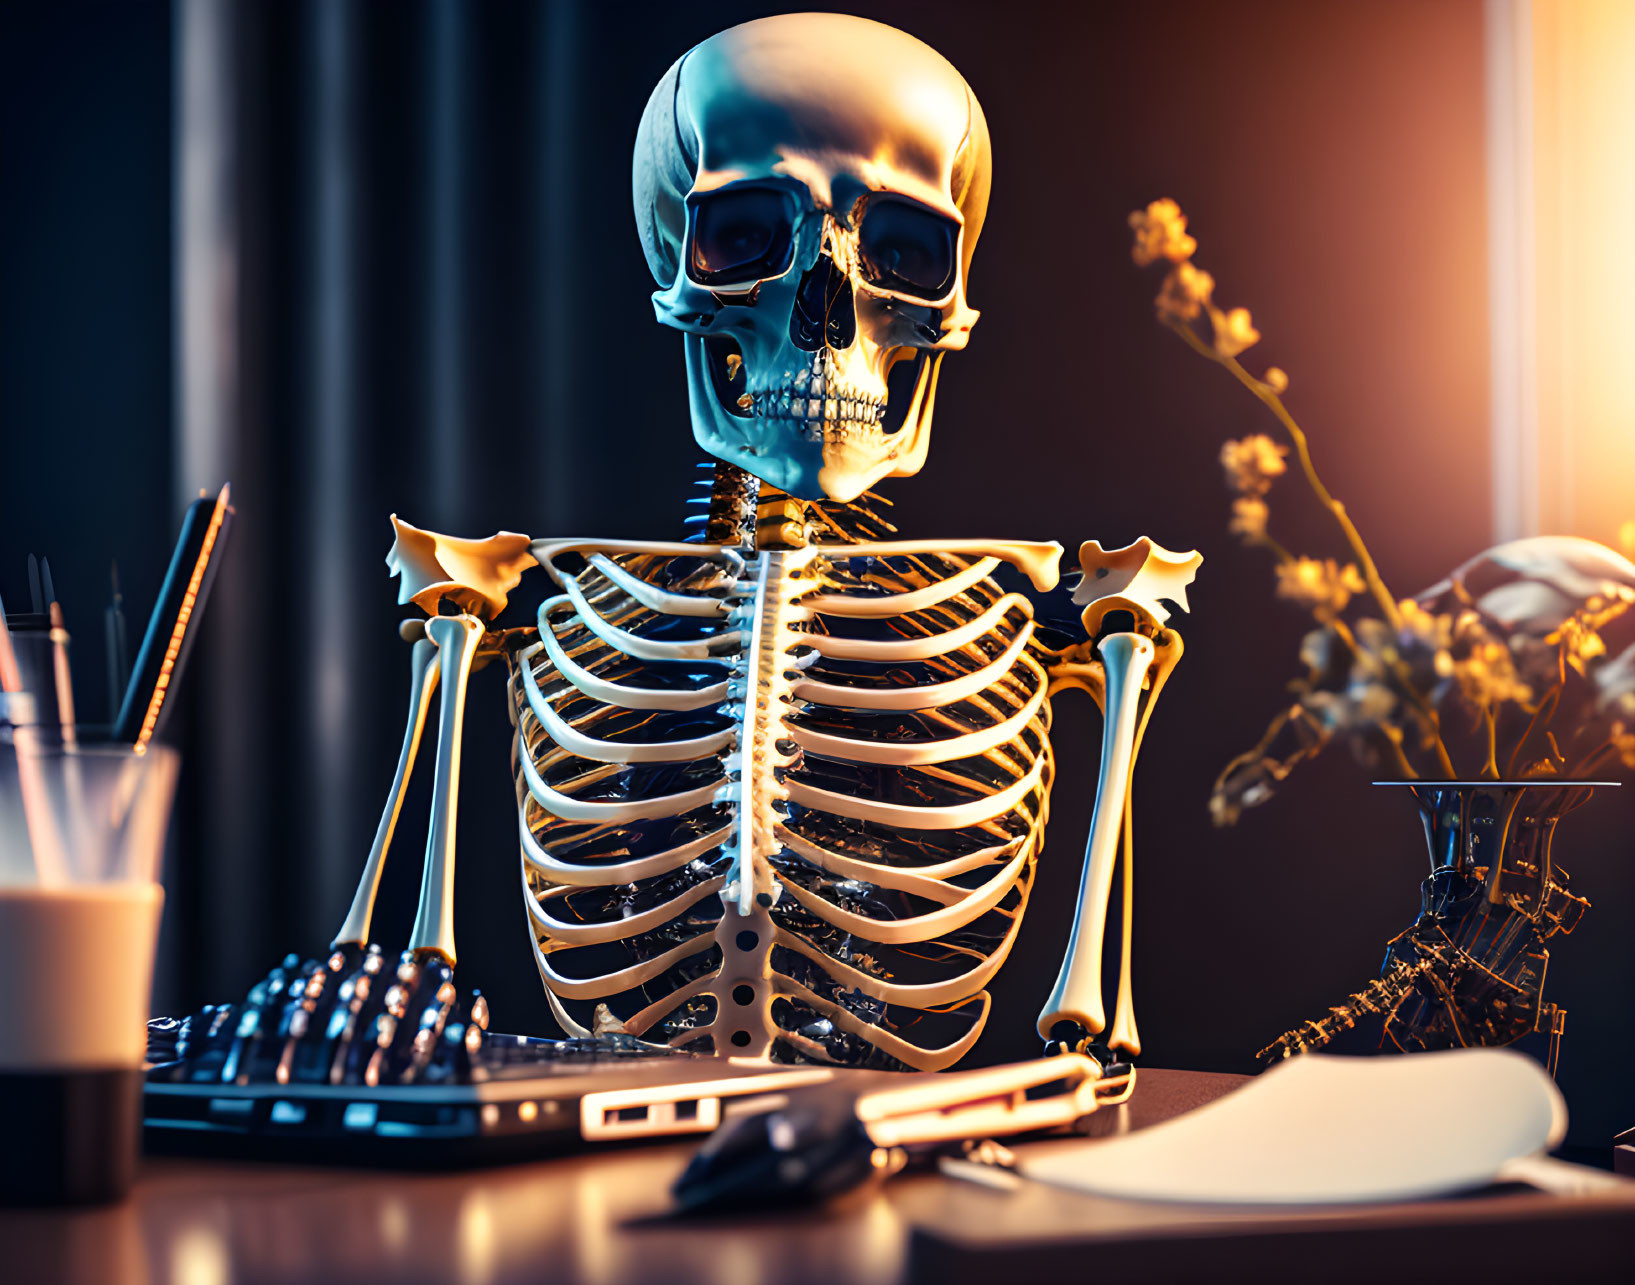 Skeleton at desk with computer, pen holder, and flower vase